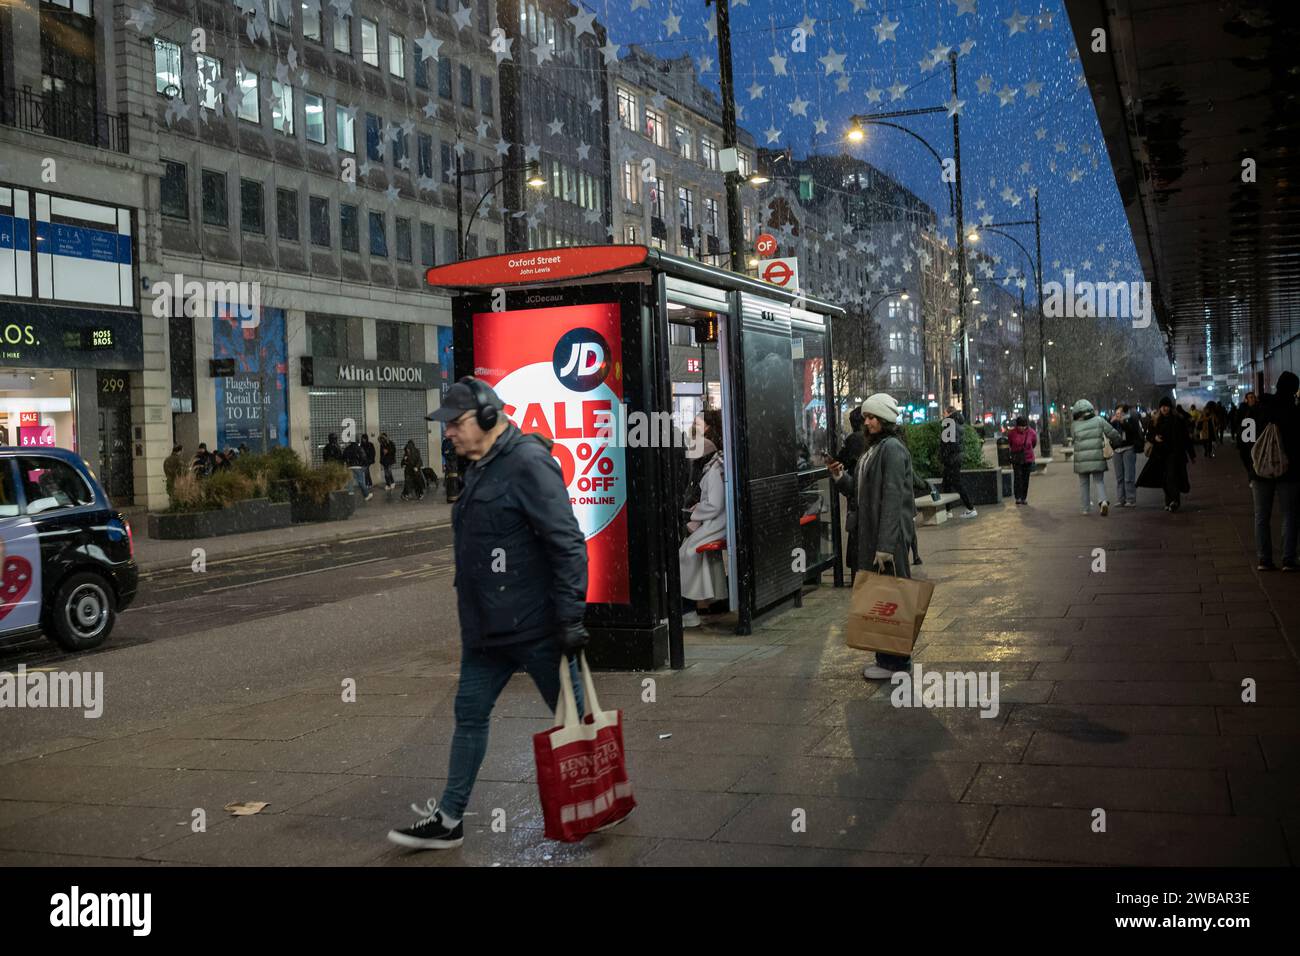 Les acheteurs bravent le froid hivernal pendant les averses glaciales et les averses de pluie sur Oxford Street, la rue la plus fréquentée de Londres, en Angleterre, au Royaume-Uni Banque D'Images